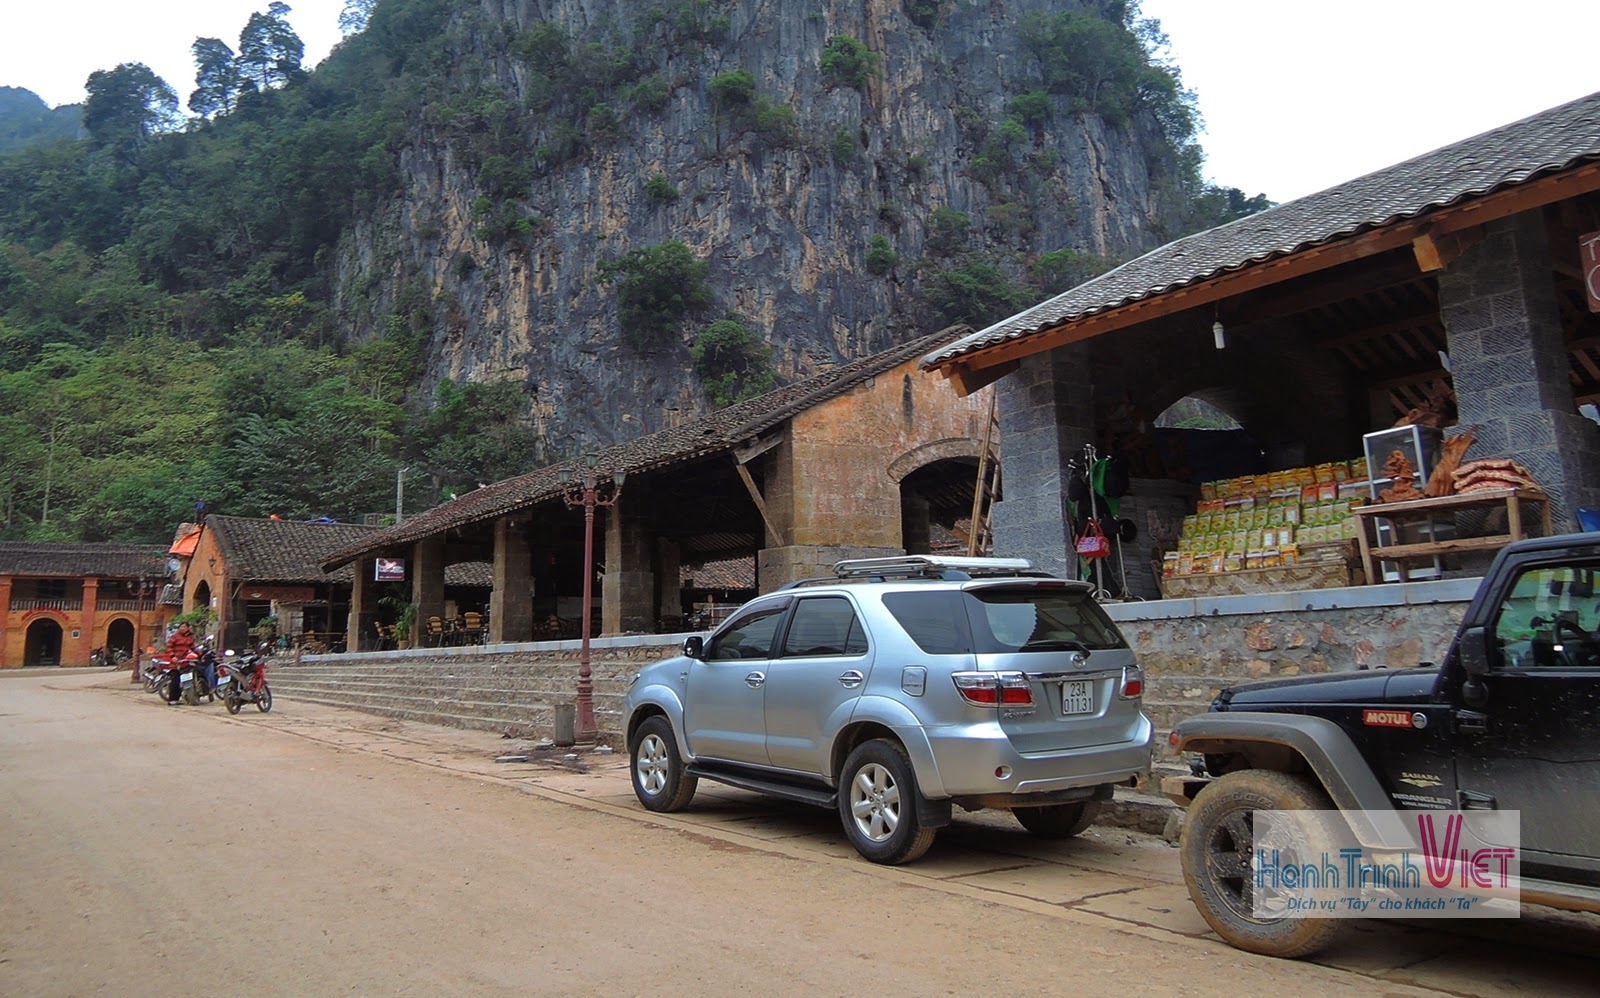 Dạo một vòng quanh thị trấn Đồng Văn